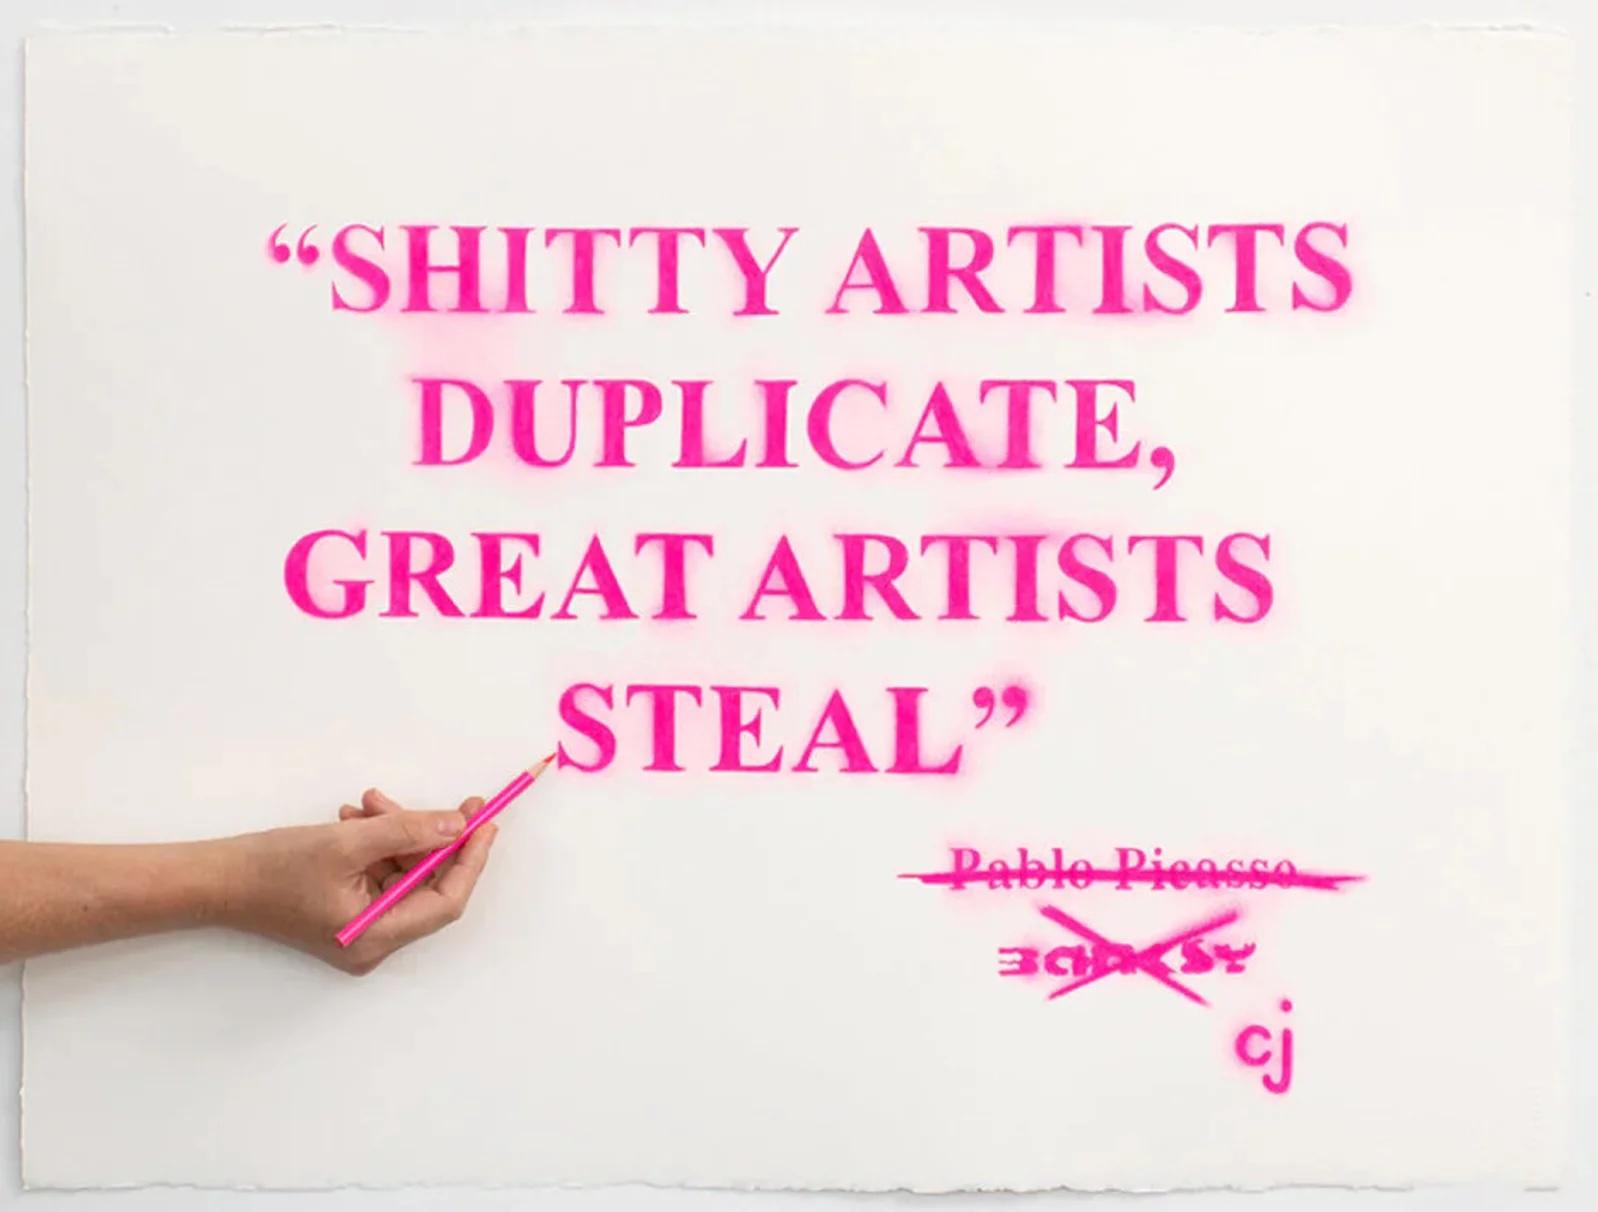 a good artist steals